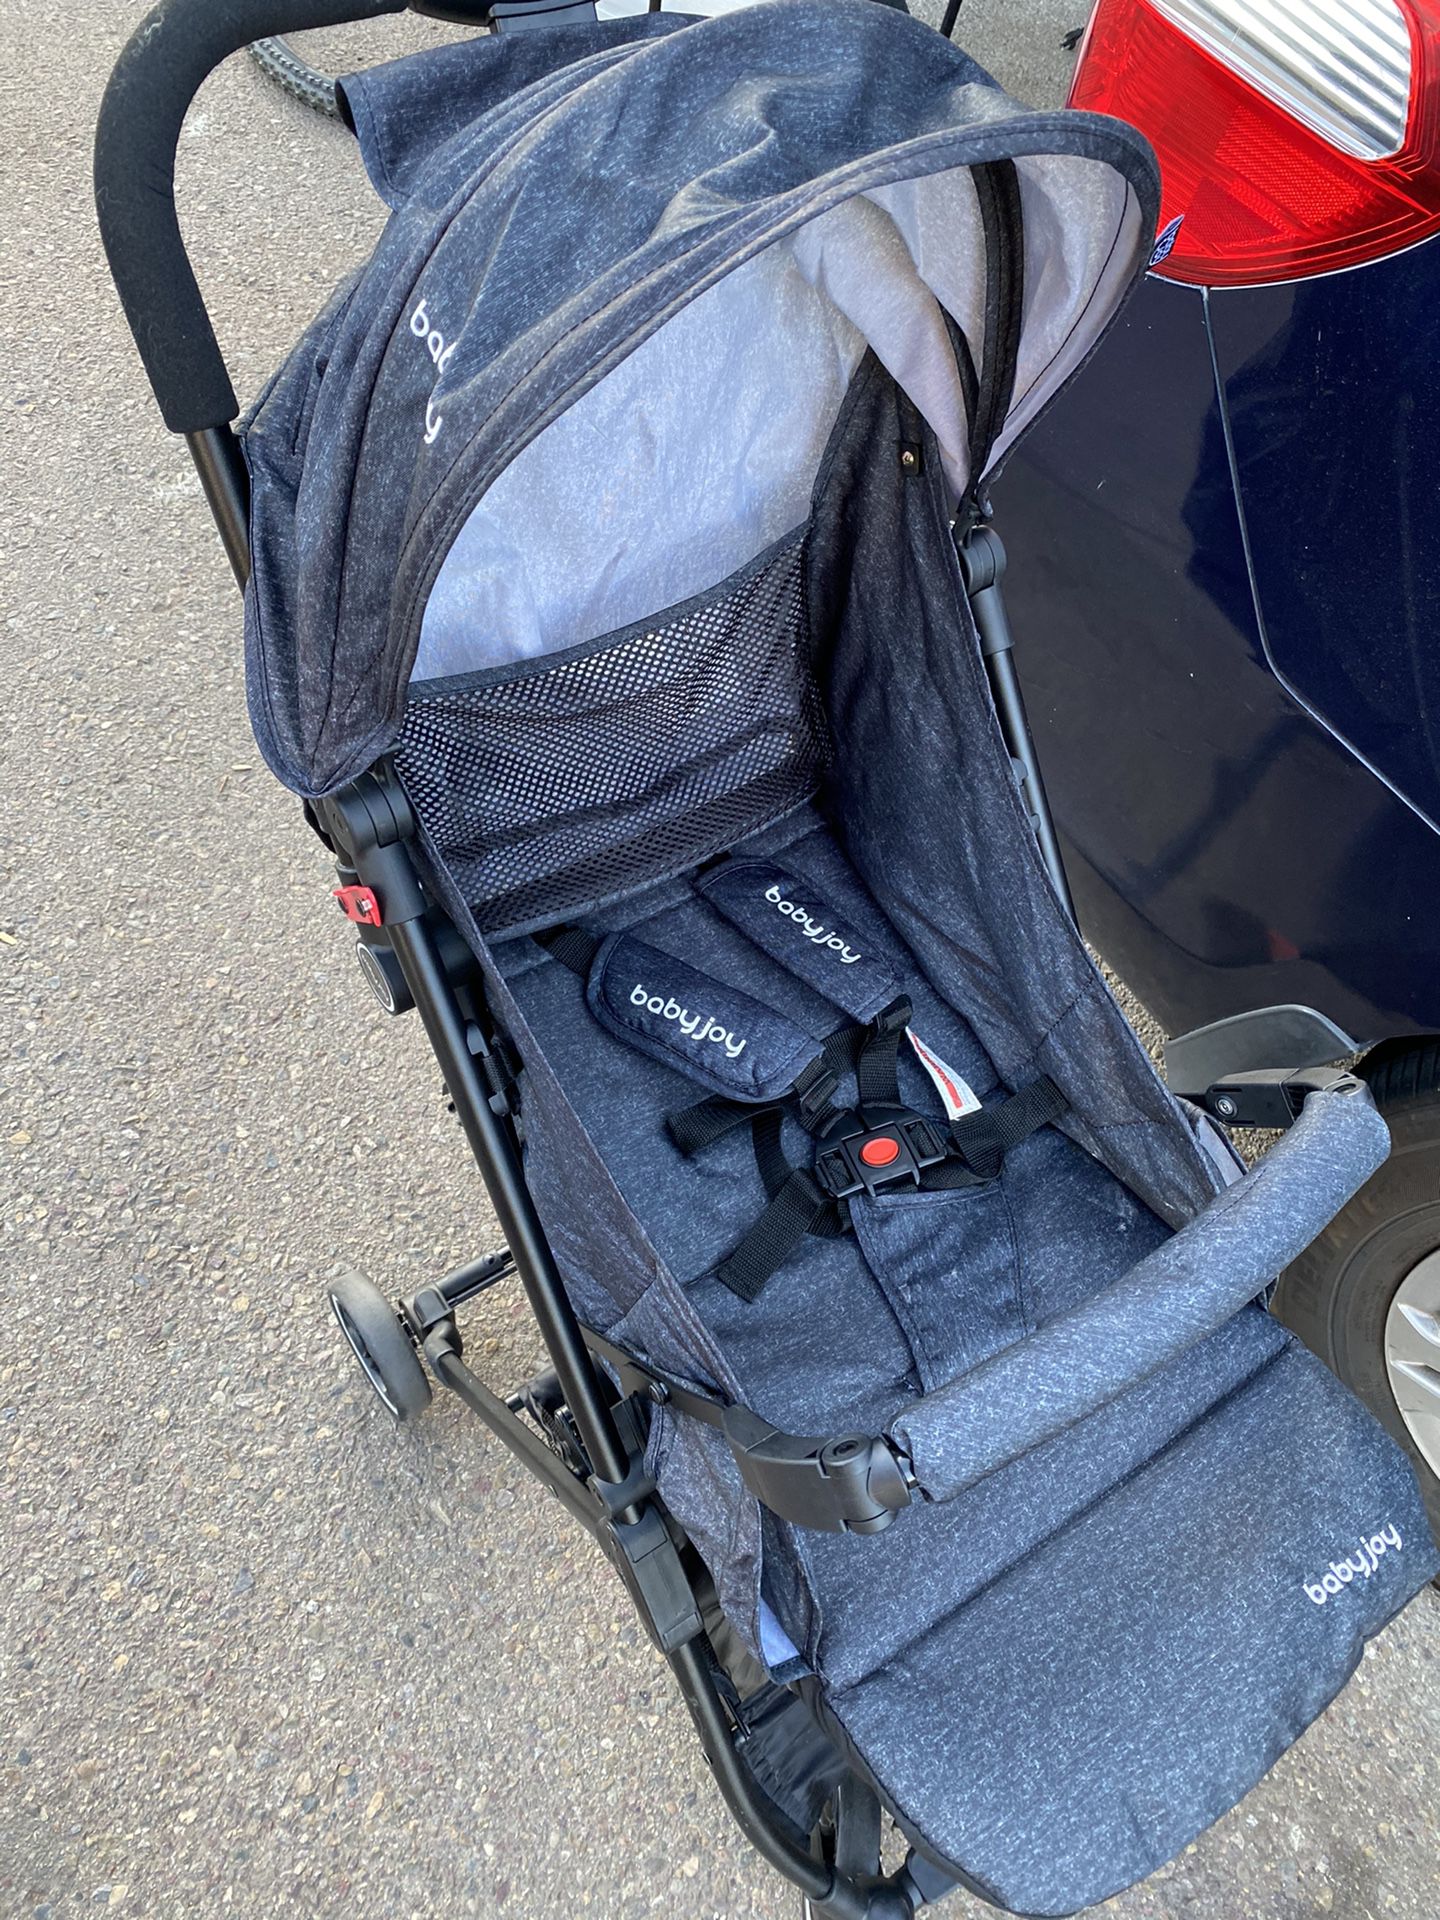 Baby joy stroller